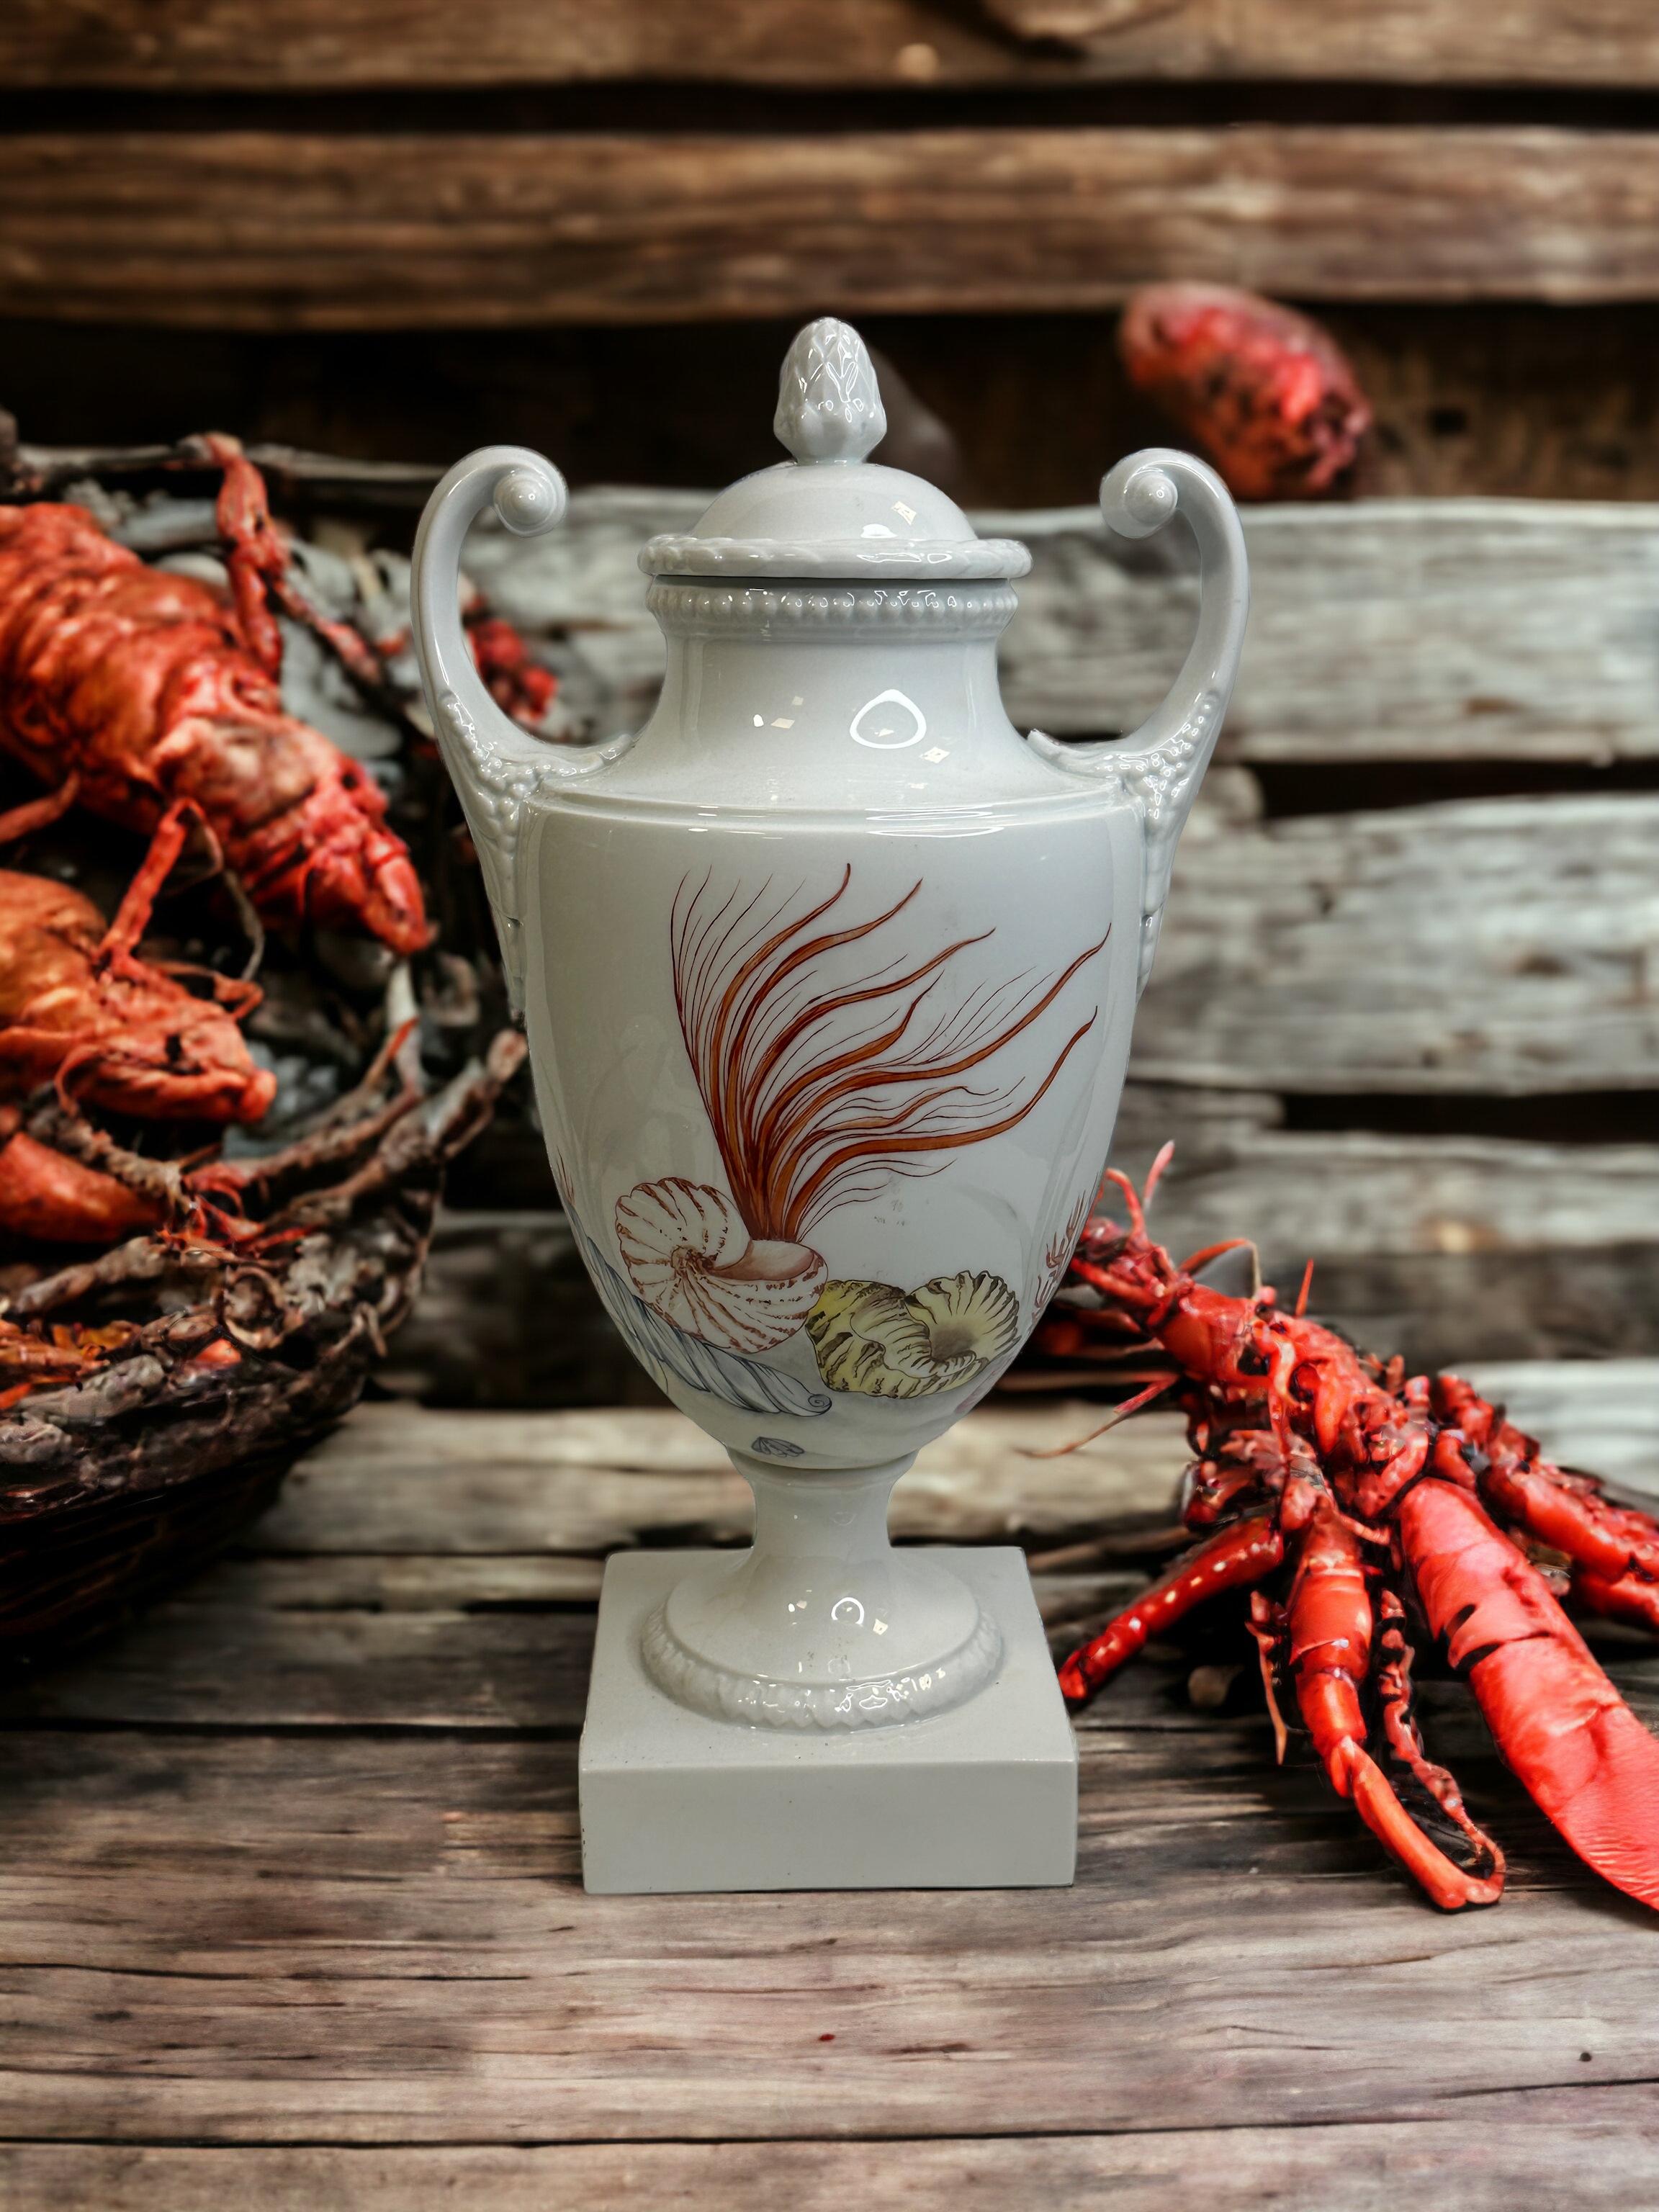 Un étonnant vase émaillé peint à la main, fabriqué en Allemagne, attribué à Lindner Porcelain, vers les années 1960. Il s'agit d'un vase lourd, mais vous pouvez également l'utiliser comme sculpture. Le vase est en très bon état, sans éclats,